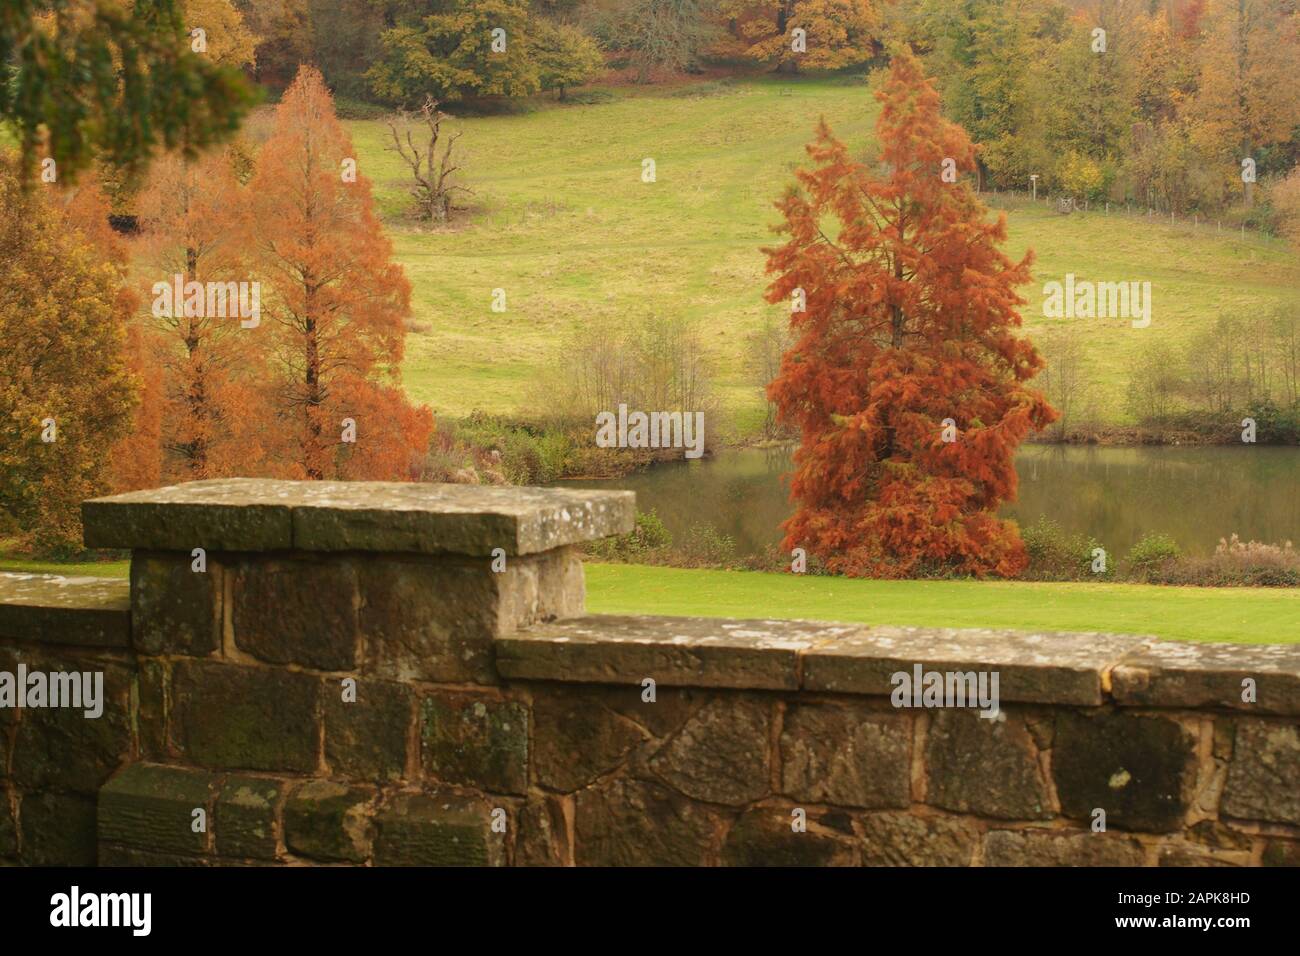 Une vue donnant sur un mur de jardin en pierre à l'herbe en pente jusqu'à un lac avec des arbres dans leurs couleurs d'automne et un bois au-delà Banque D'Images